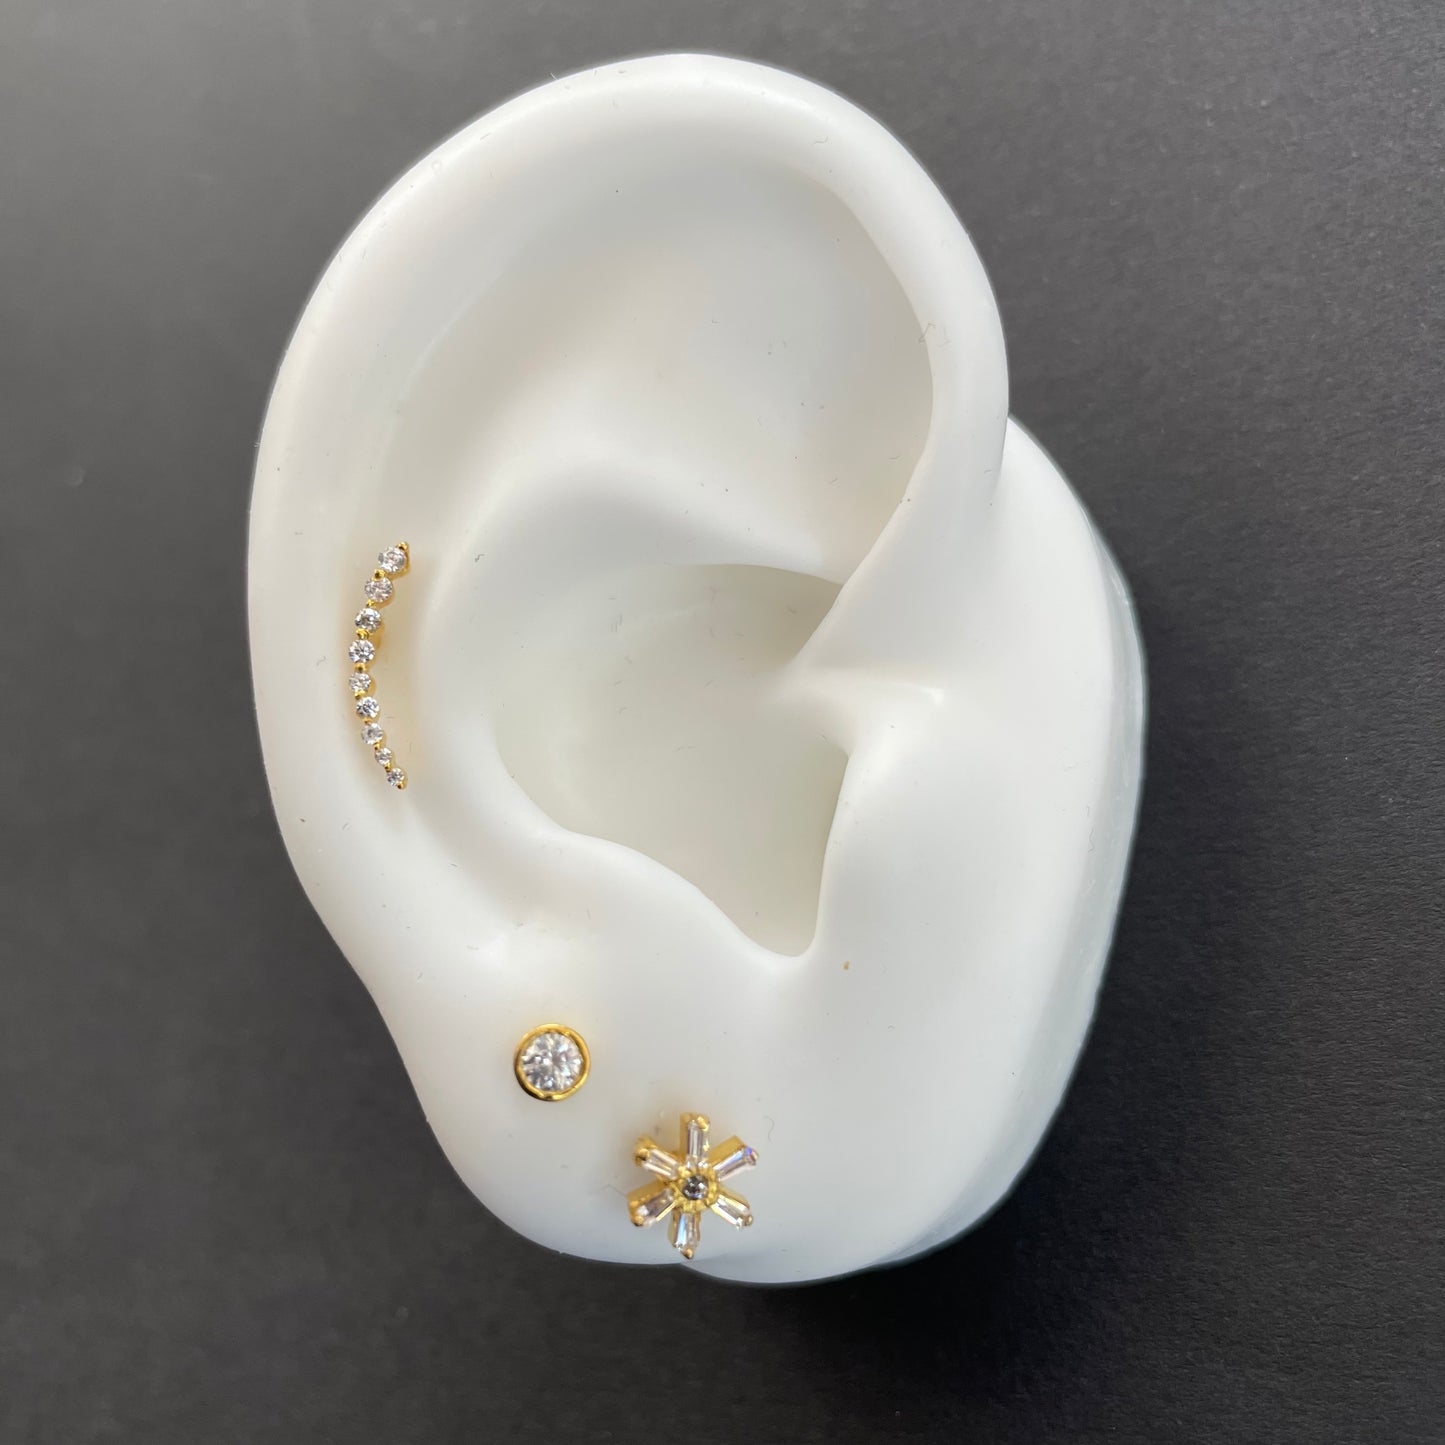 Bezel-Set Classic Diamond Stud Earring - - Jewelry - Goldie Paris Jewelry - Bezel Earring